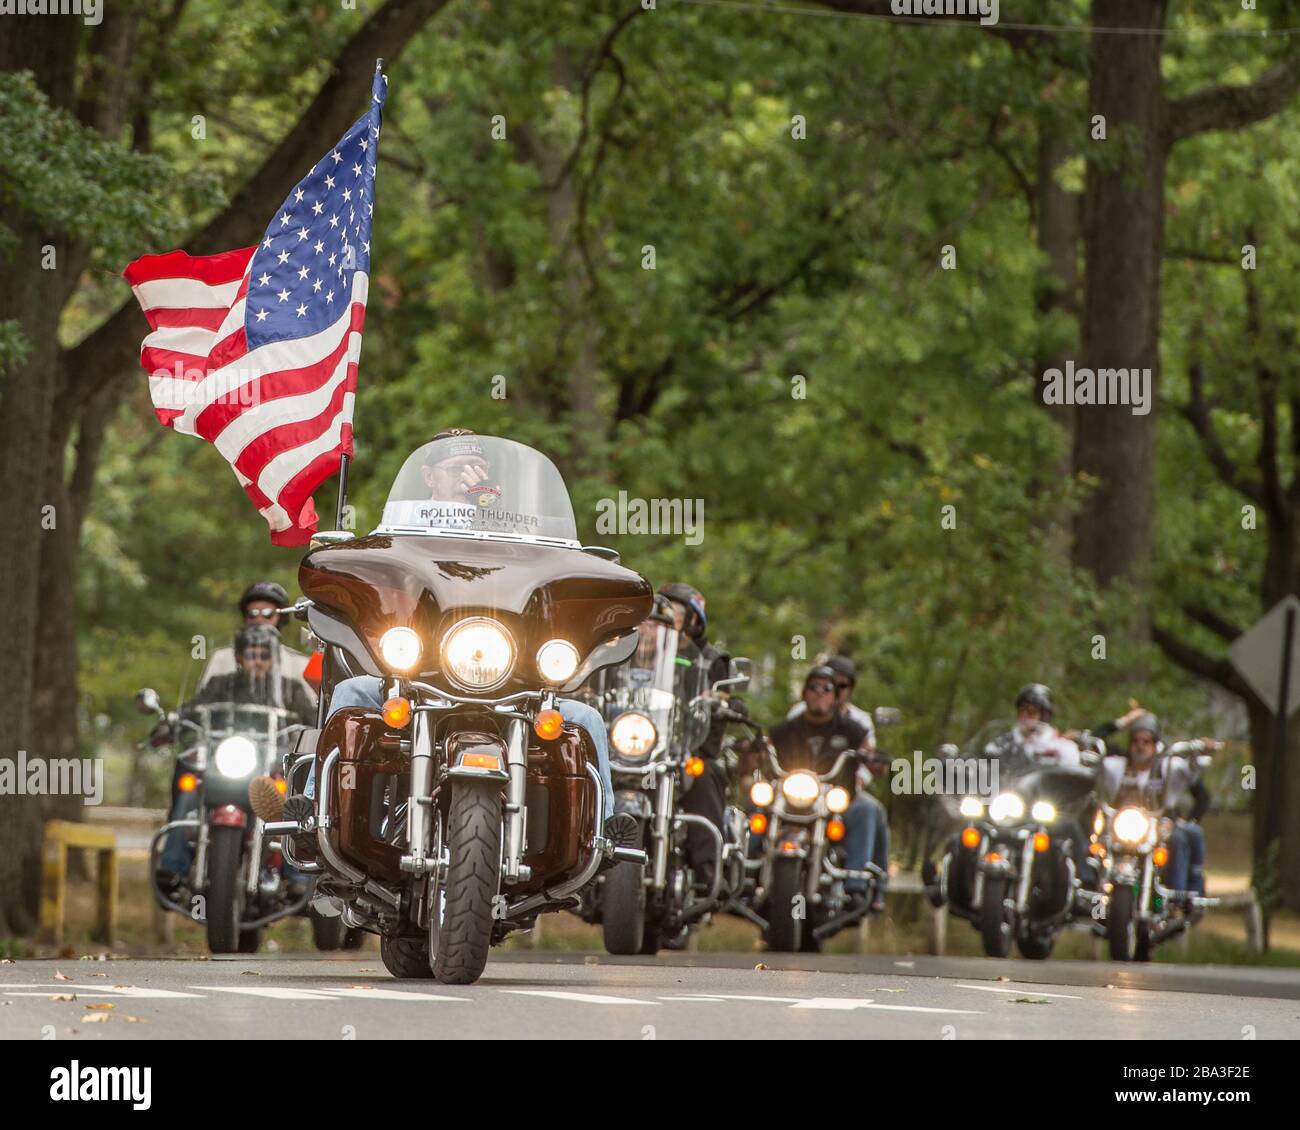 Rolling Thunder Rallye-Event mit mehreren Motorrädern und einer großen amerikanischen Flagge. Stockfoto